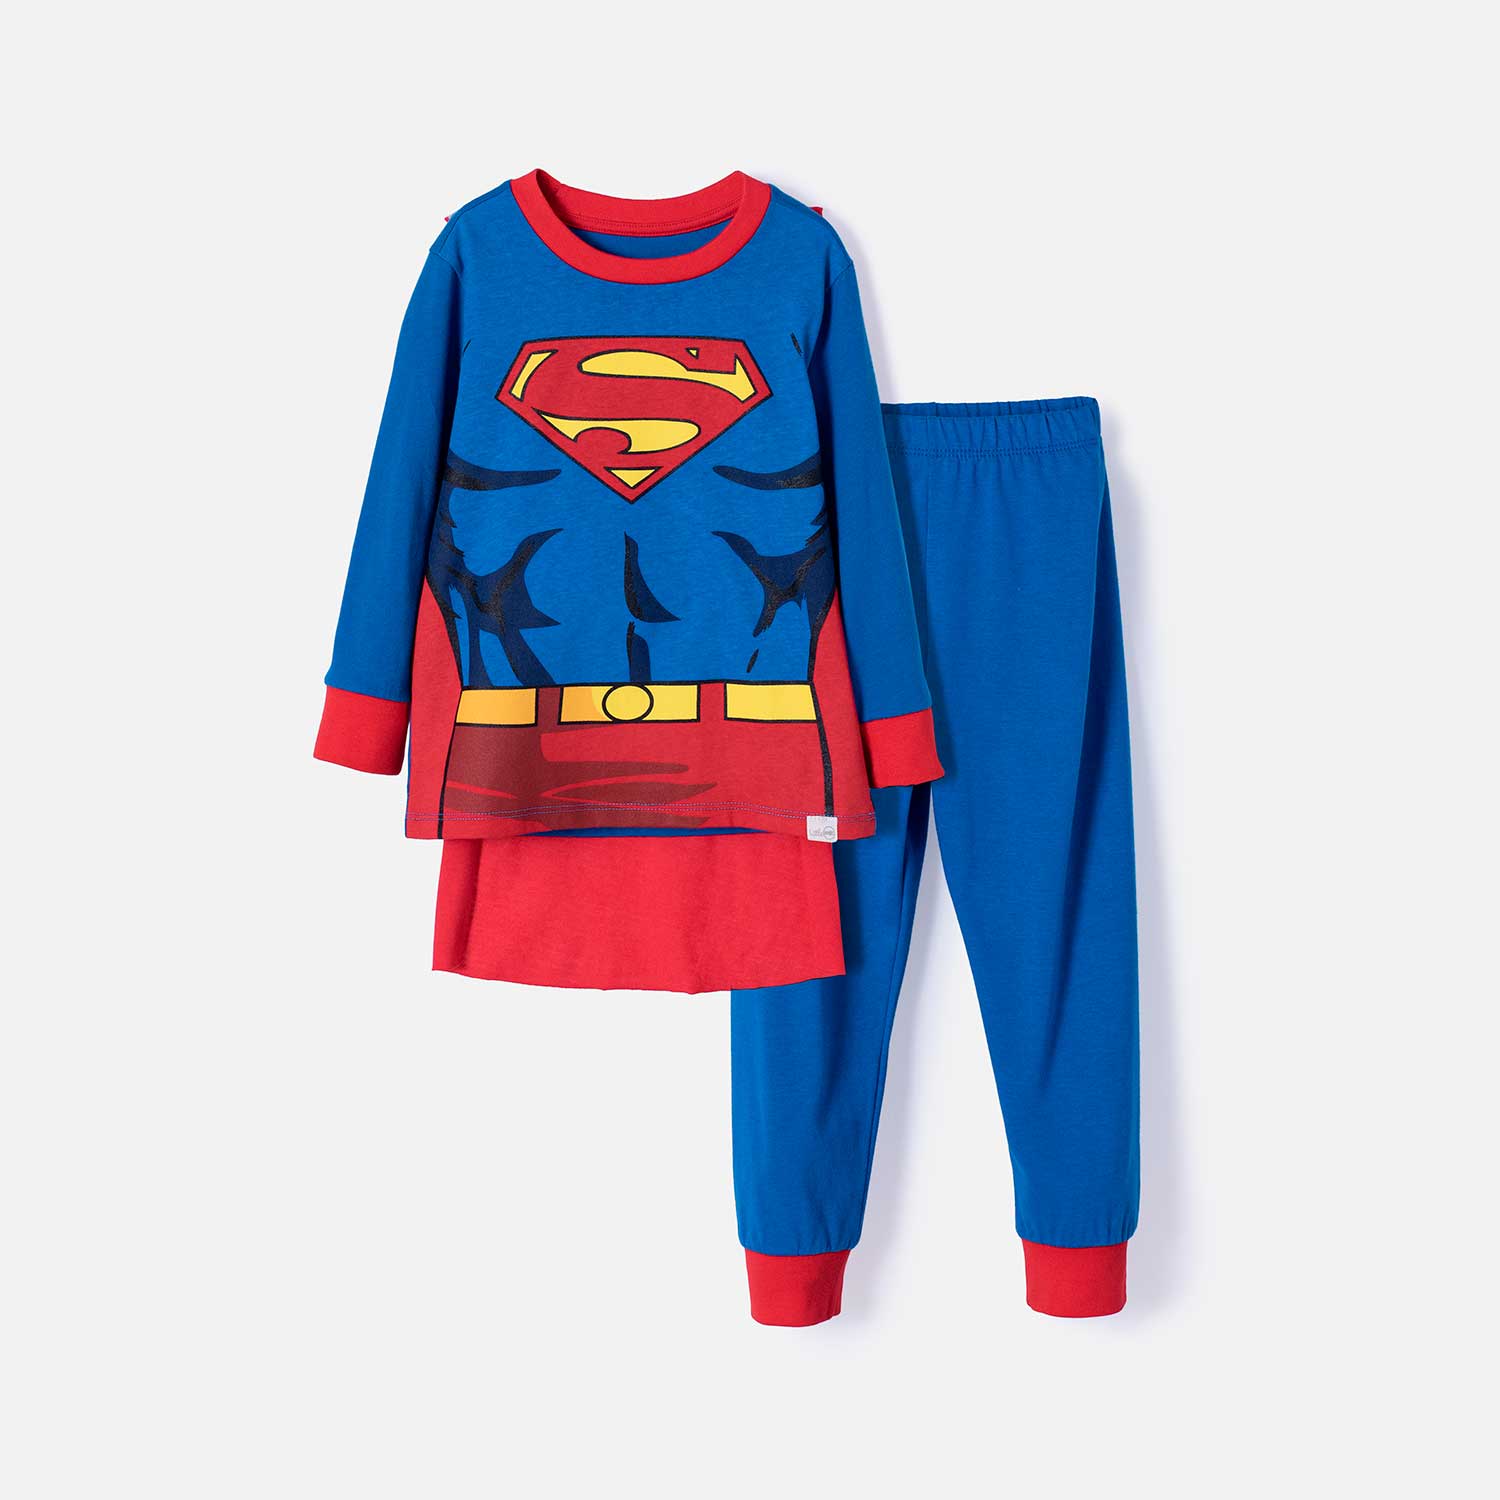 Pijama de Superman azul y roja con pantalón largo para niño 2T a 5T 2T-0